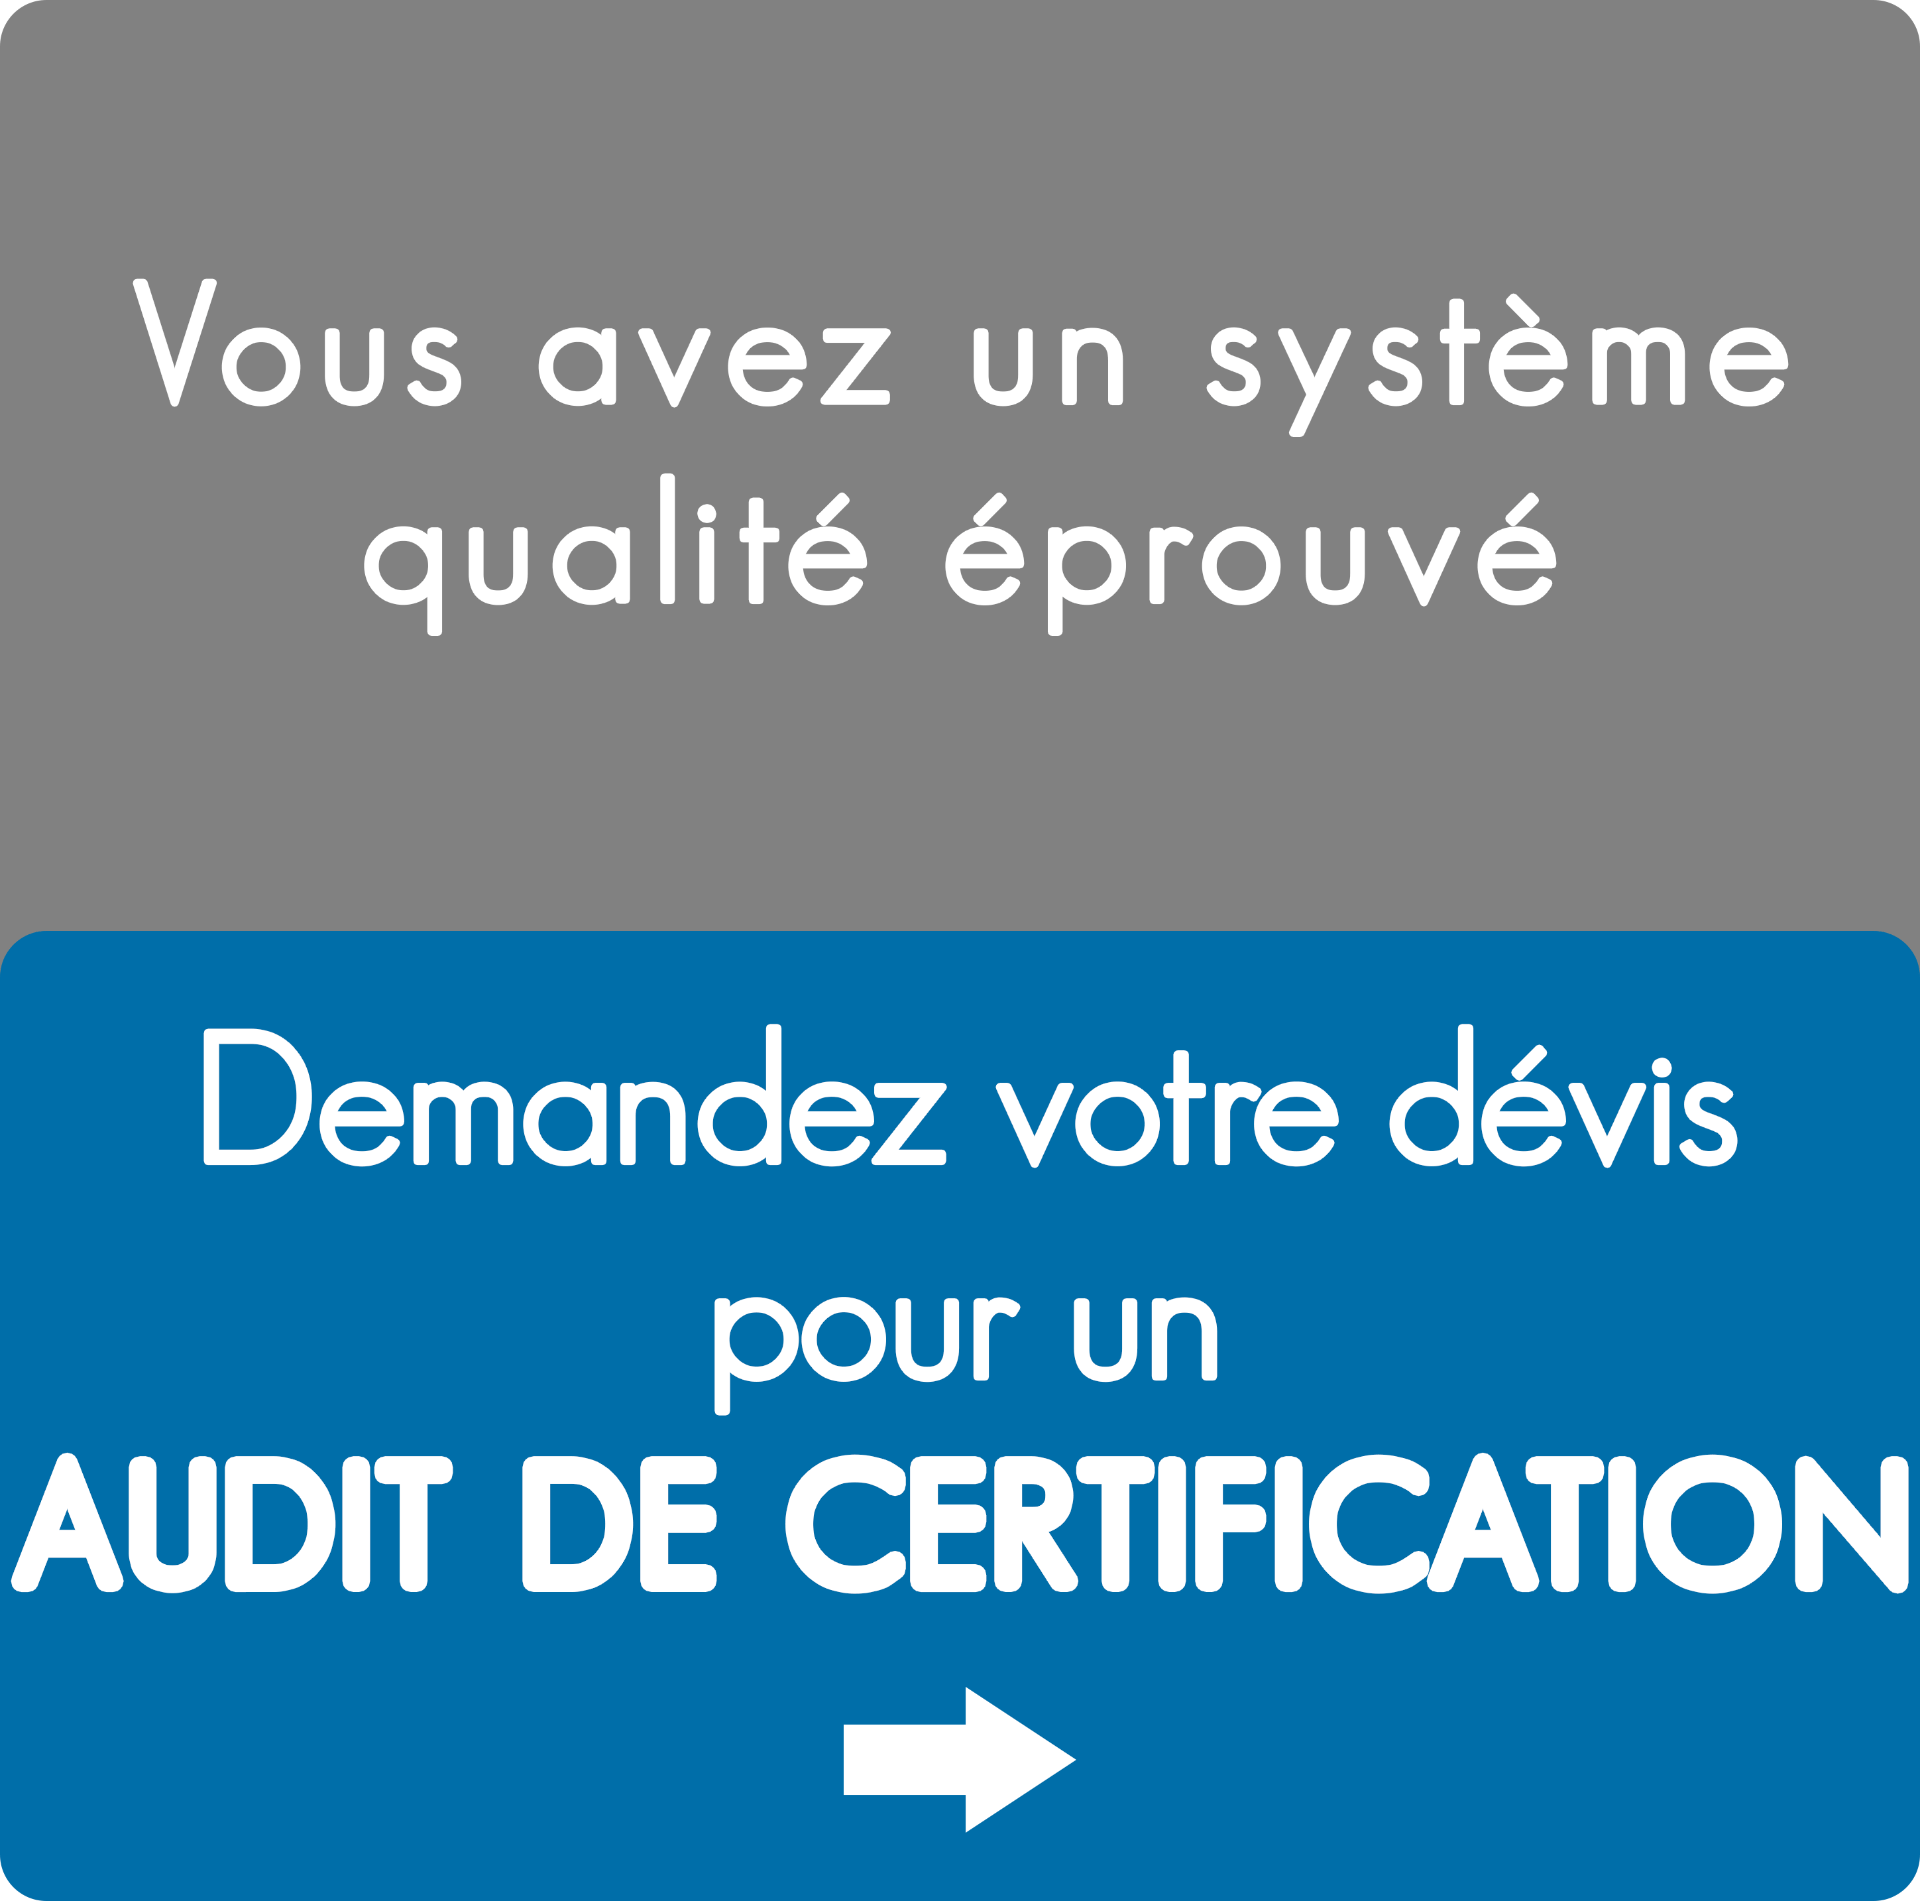 Audit de certification